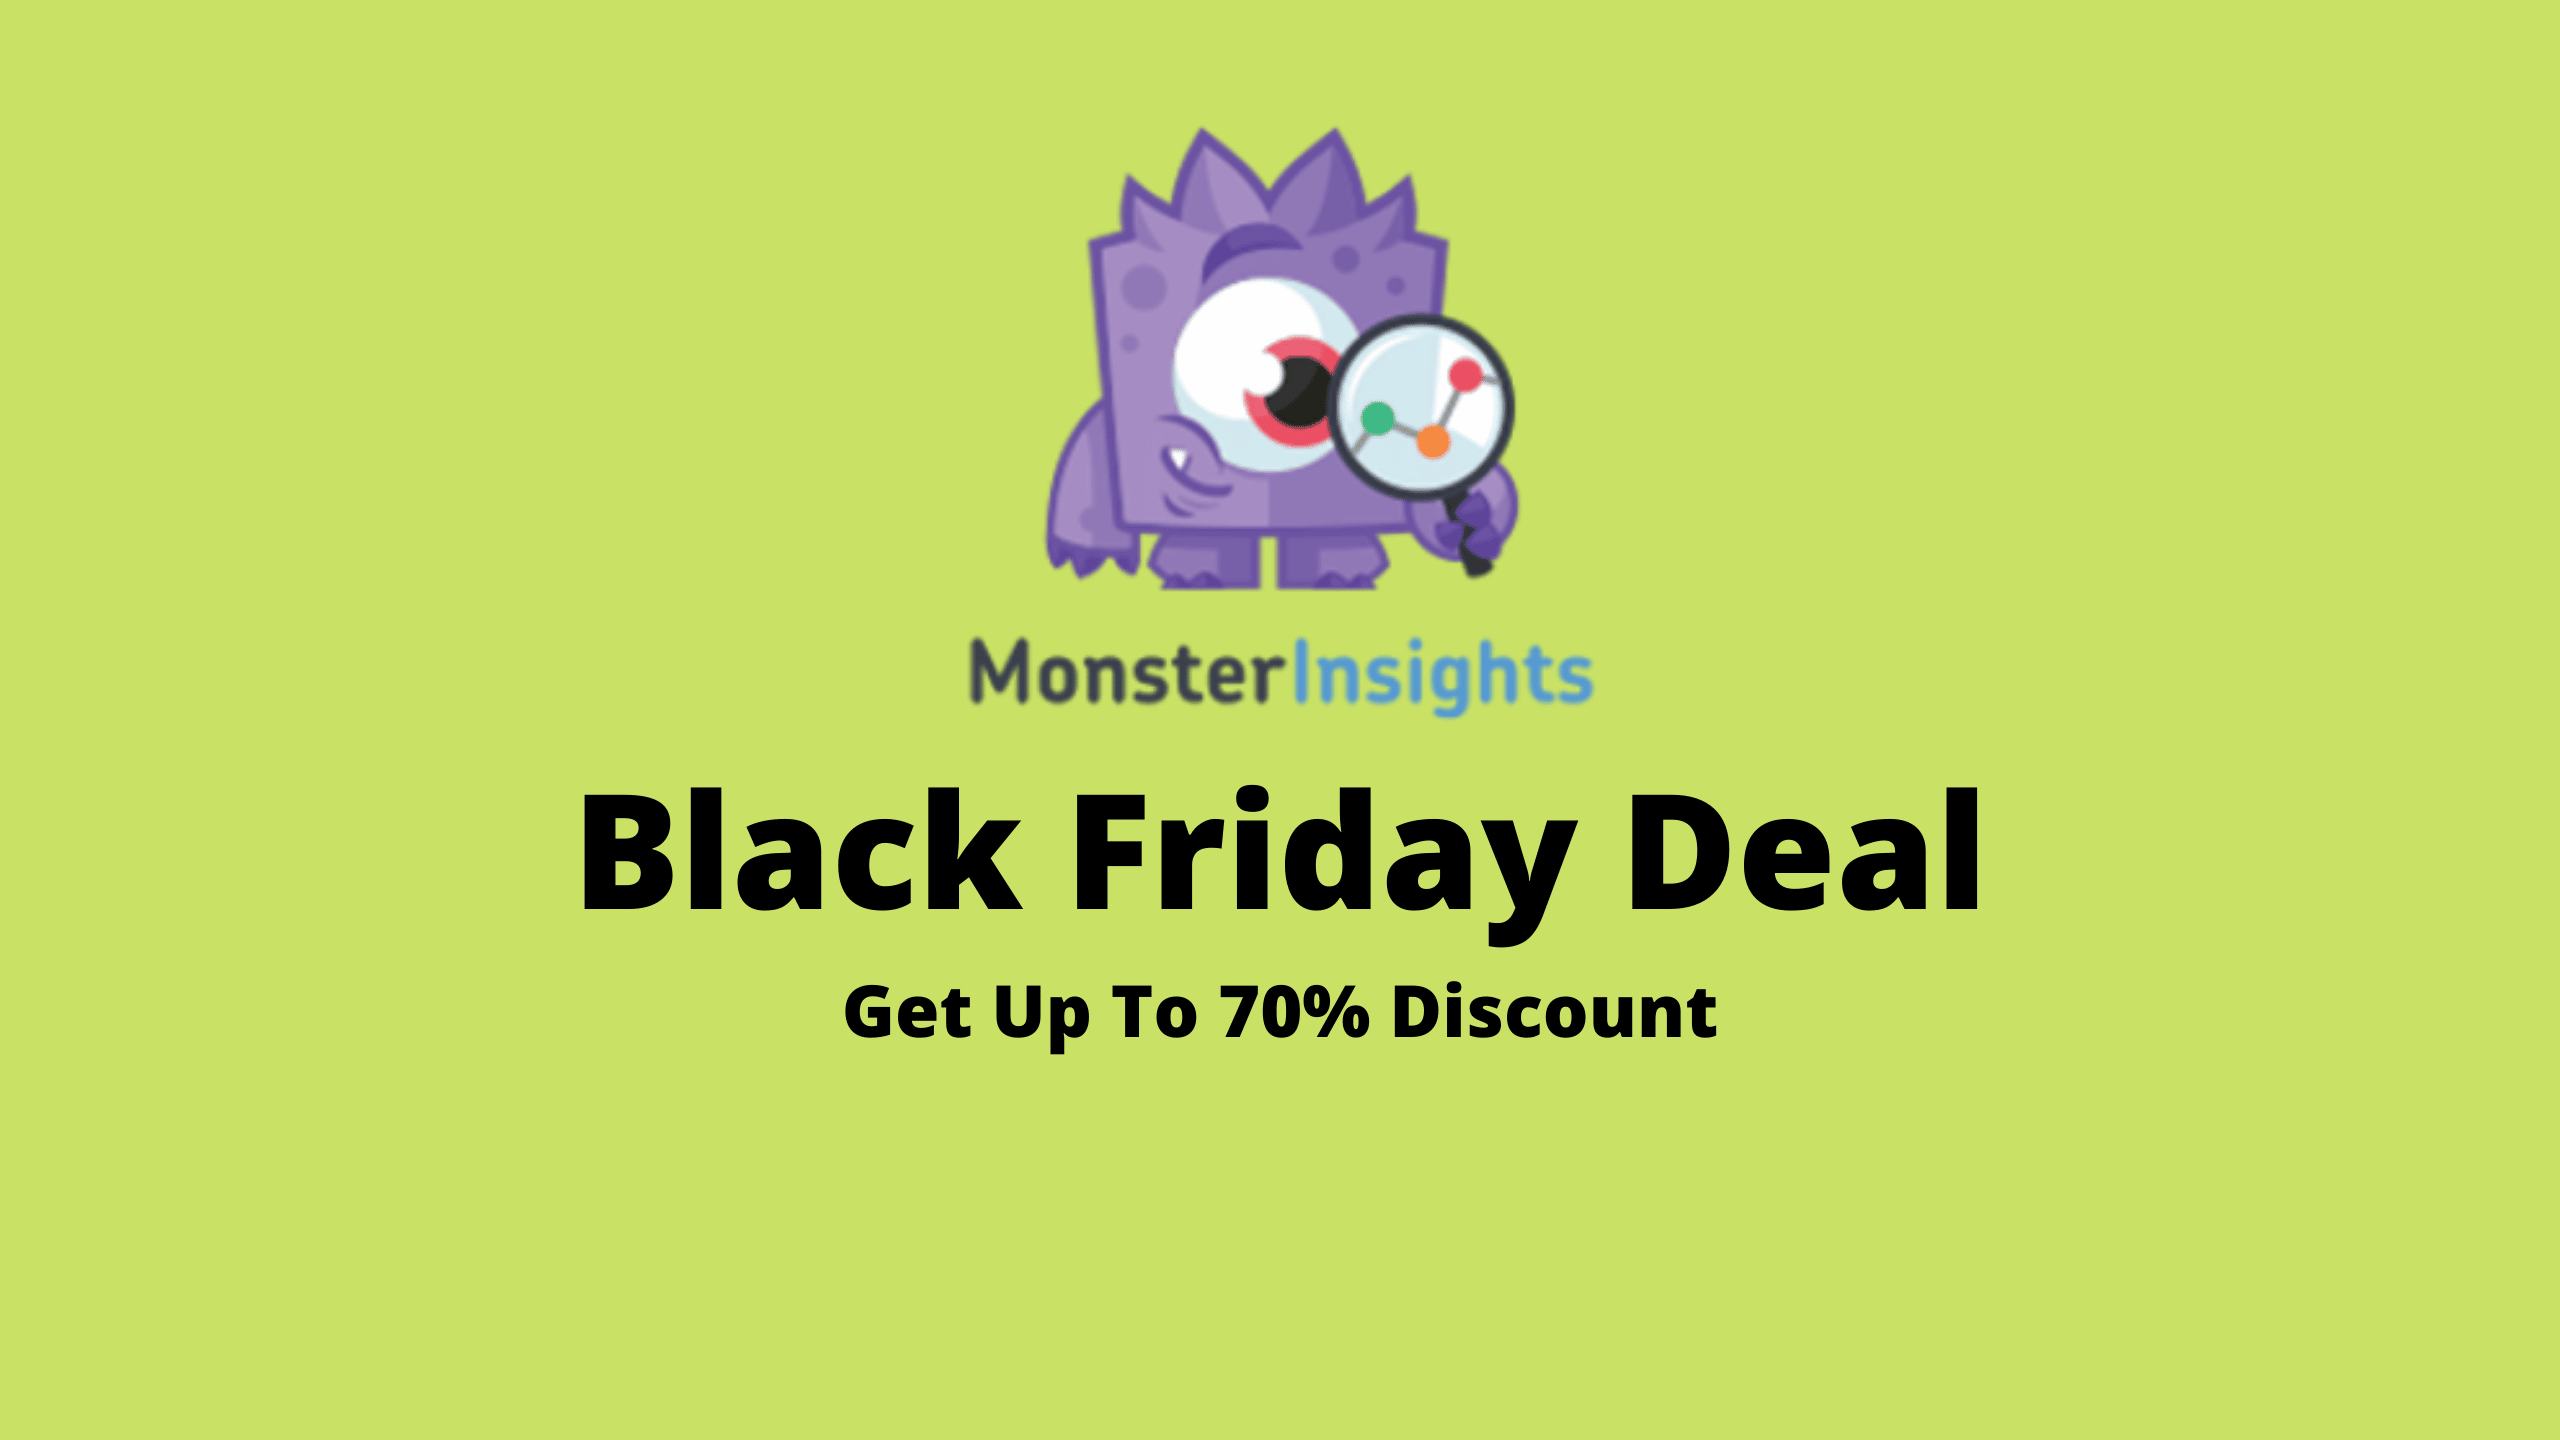 MonsterInsights Black Friday Deal